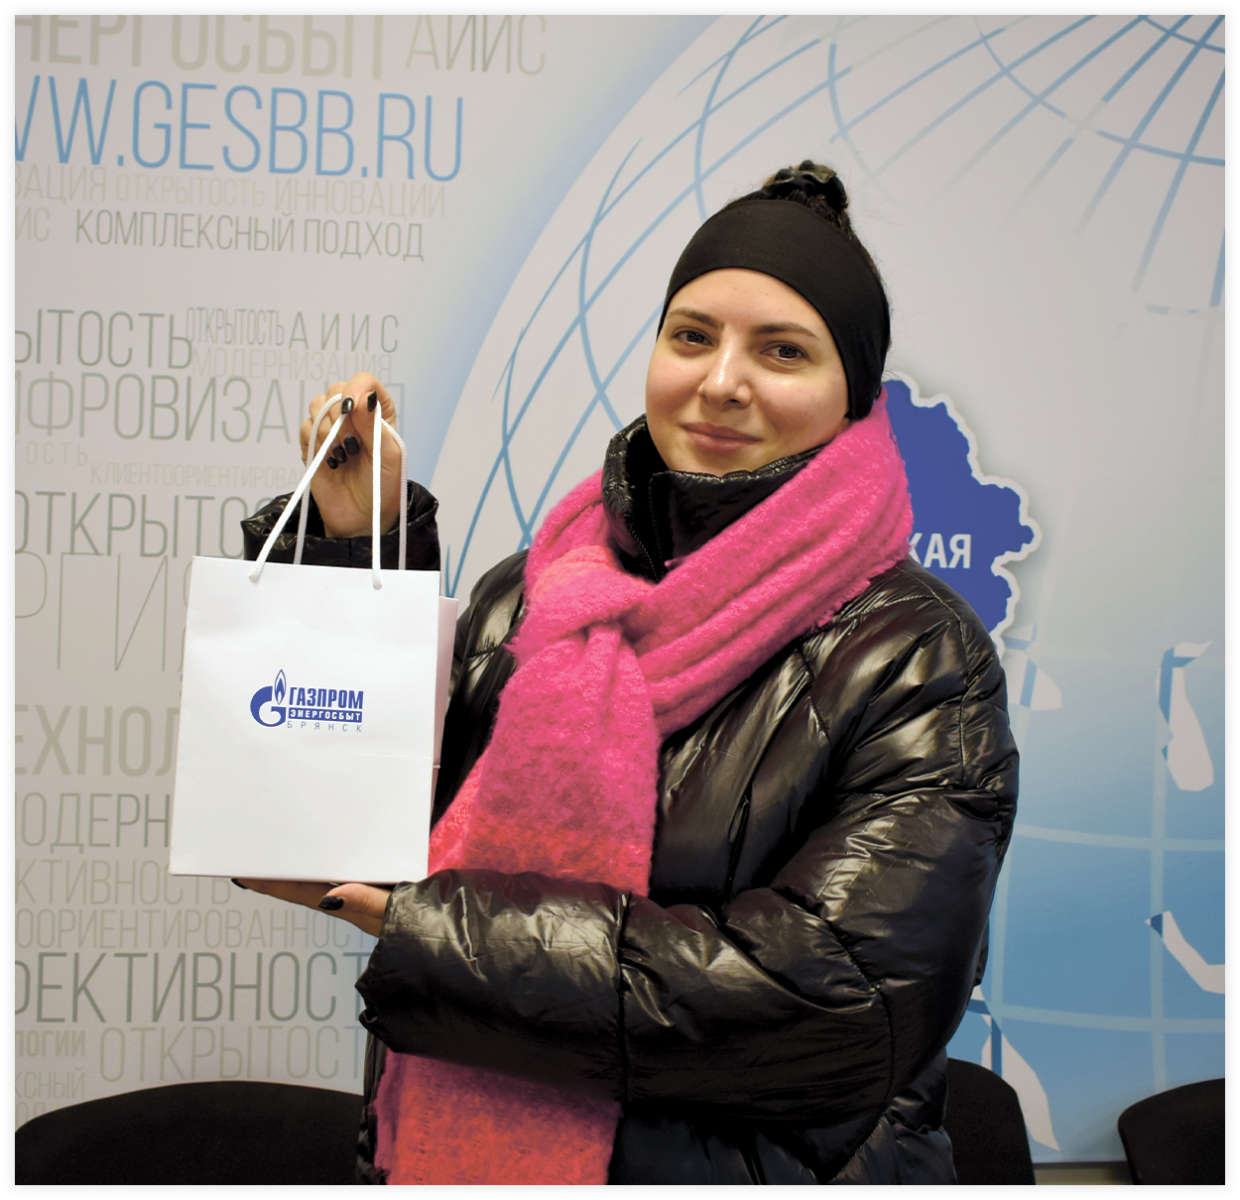 ООО «Газпром энергосбыт Брянск» вручил приз победителю акции «Счастливый счет»